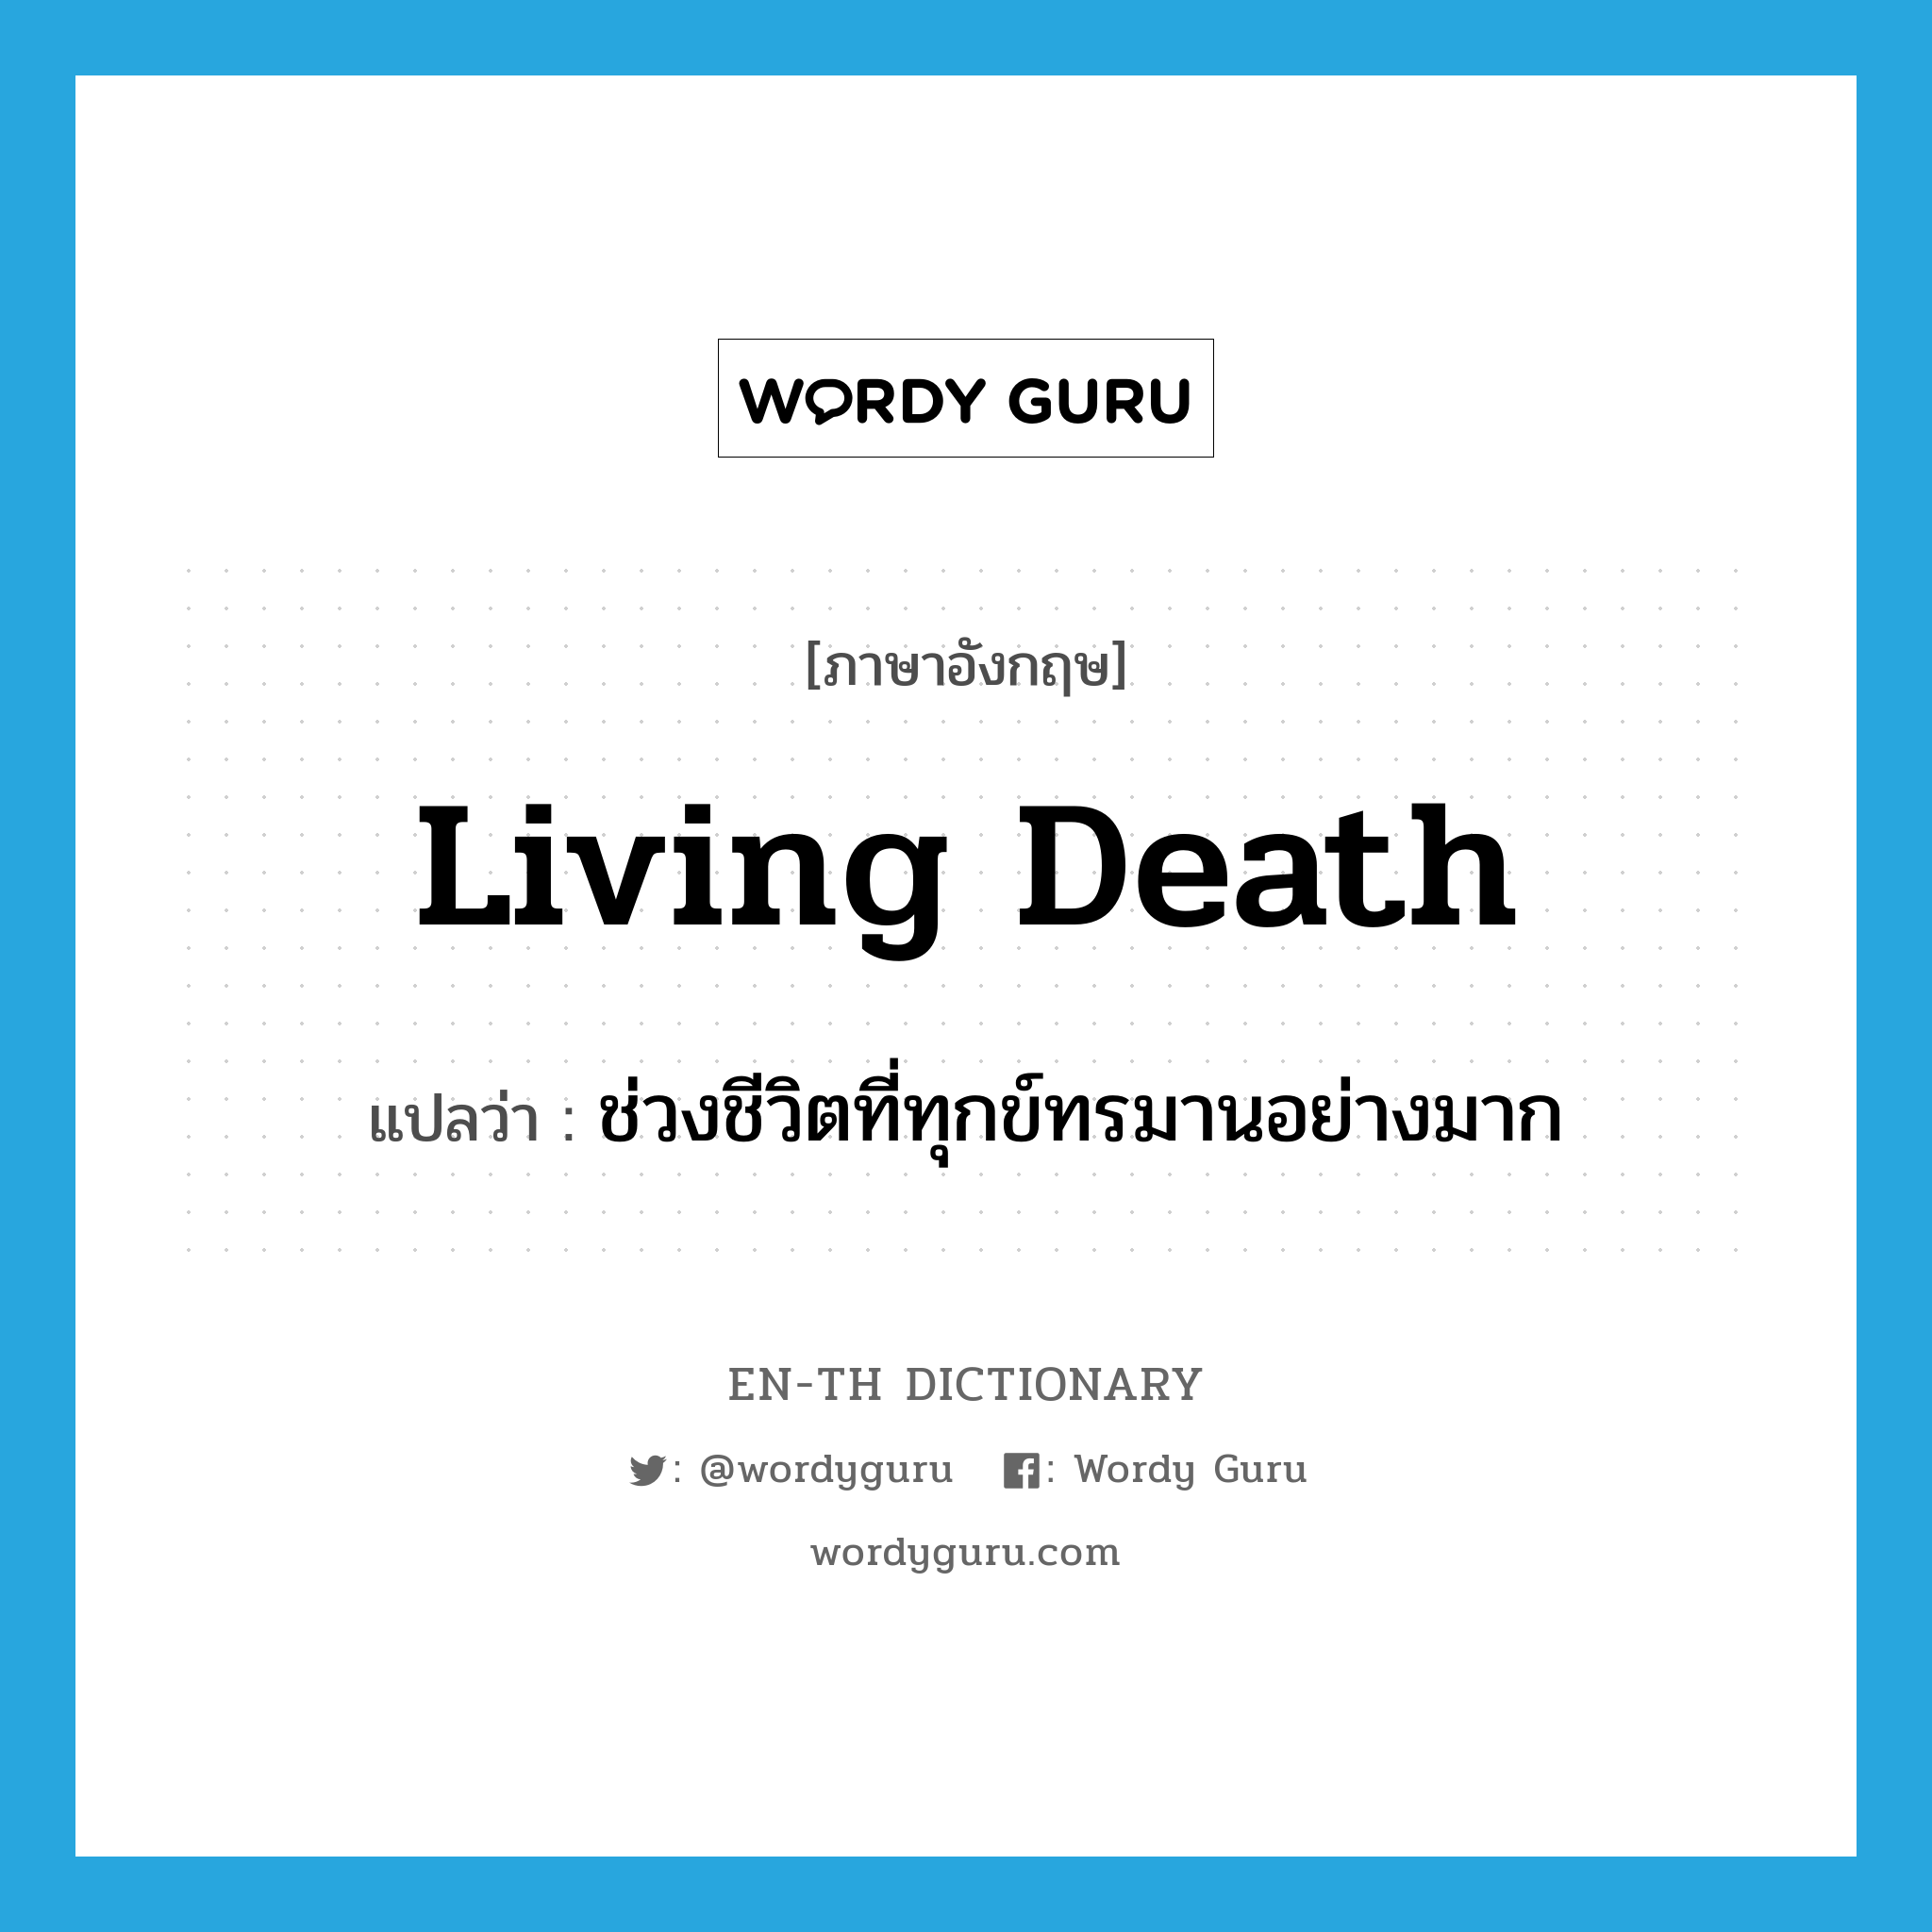 ช่วงชีวิตที่ทุกข์ทรมานอย่างมาก ภาษาอังกฤษ?, คำศัพท์ภาษาอังกฤษ ช่วงชีวิตที่ทุกข์ทรมานอย่างมาก แปลว่า living death ประเภท N หมวด N